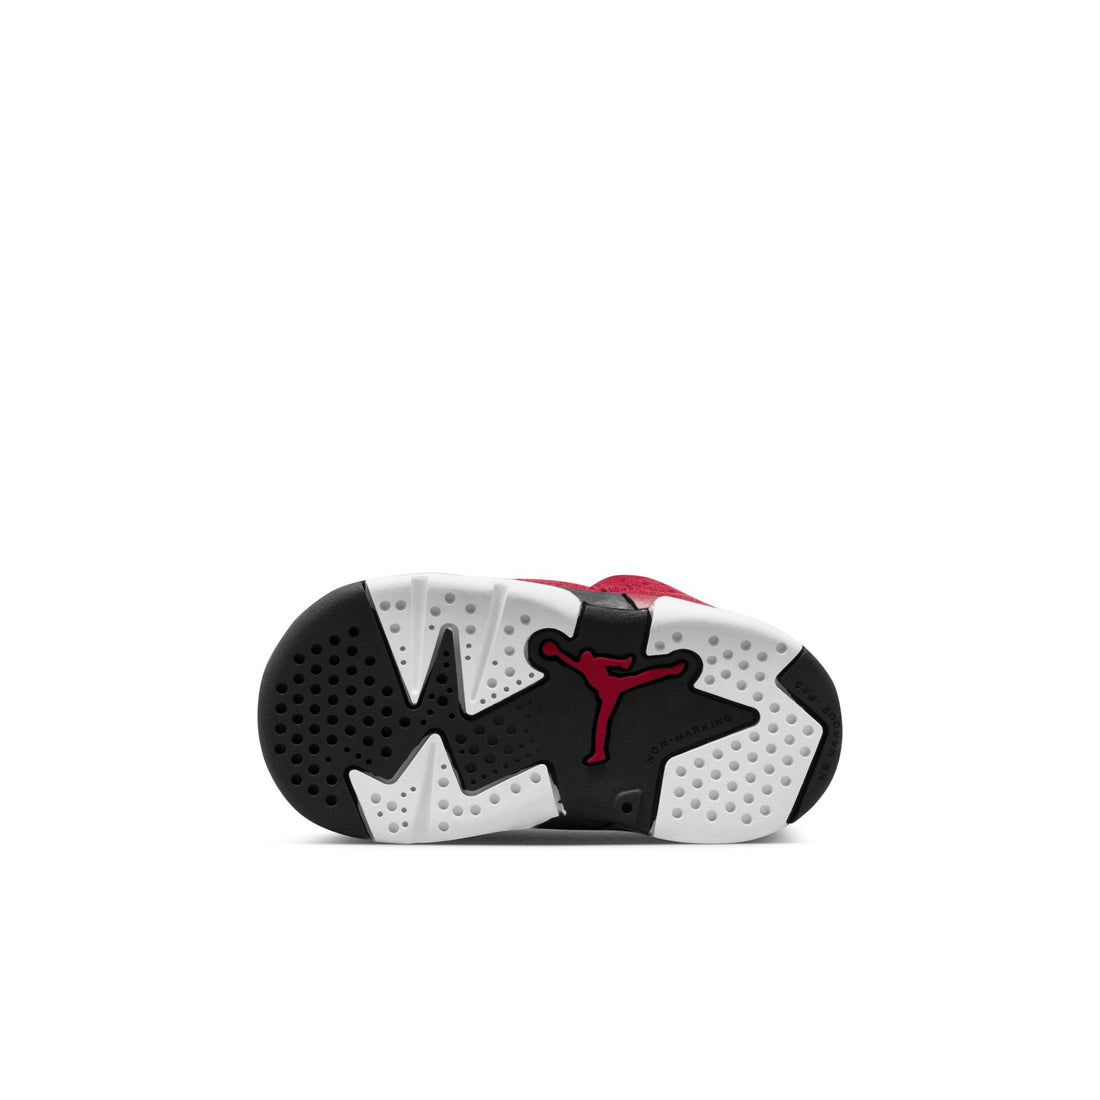 Air Jordan 6 Retro (TD) "Toro"